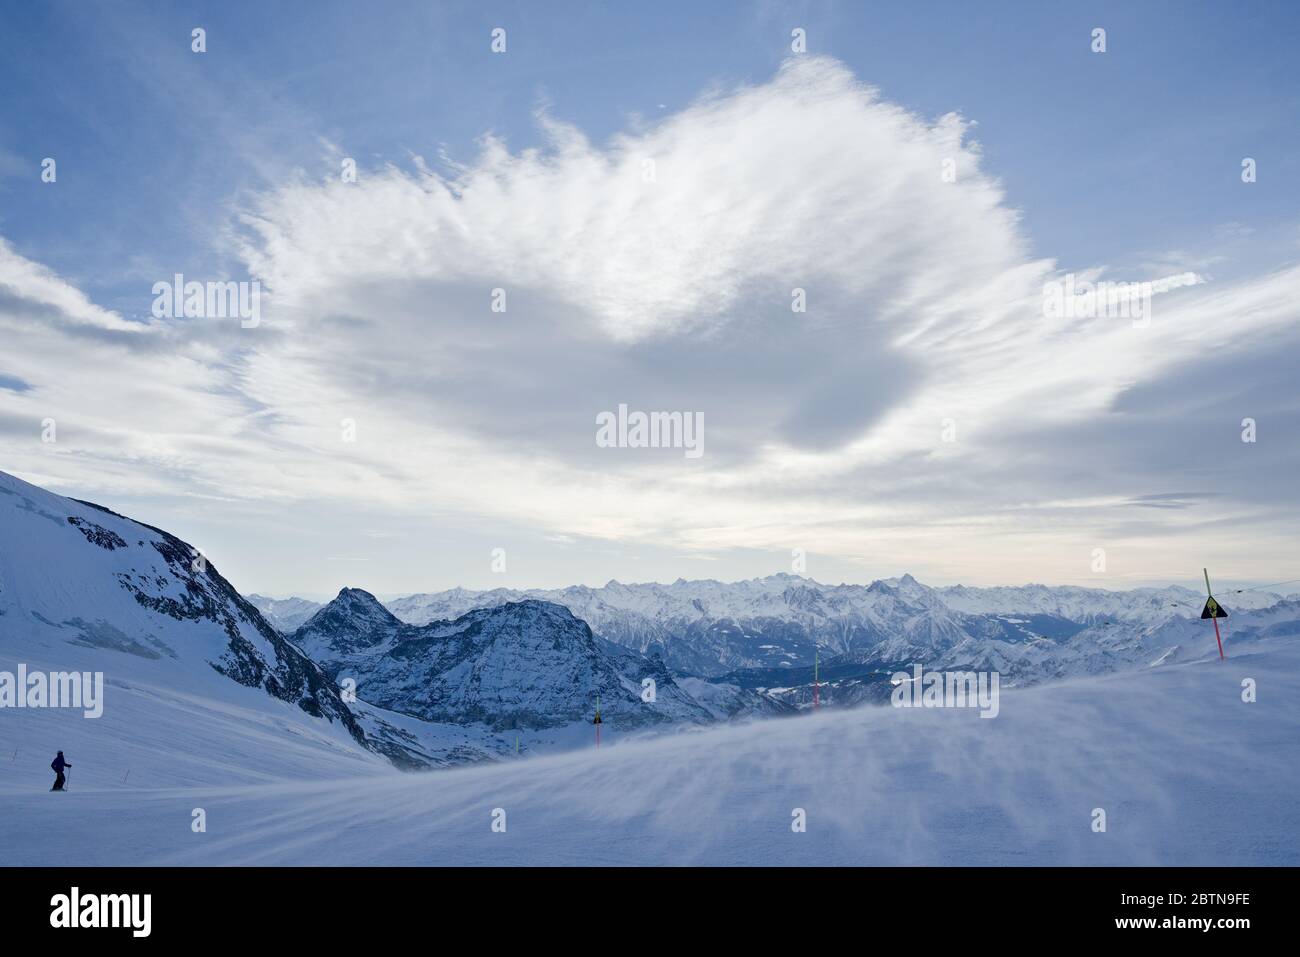 Eine herzförmige Wolke schwebt über einer Skipiste als Teil einer weitläufigen bergkulisse in den italienischen alpen Stockfoto